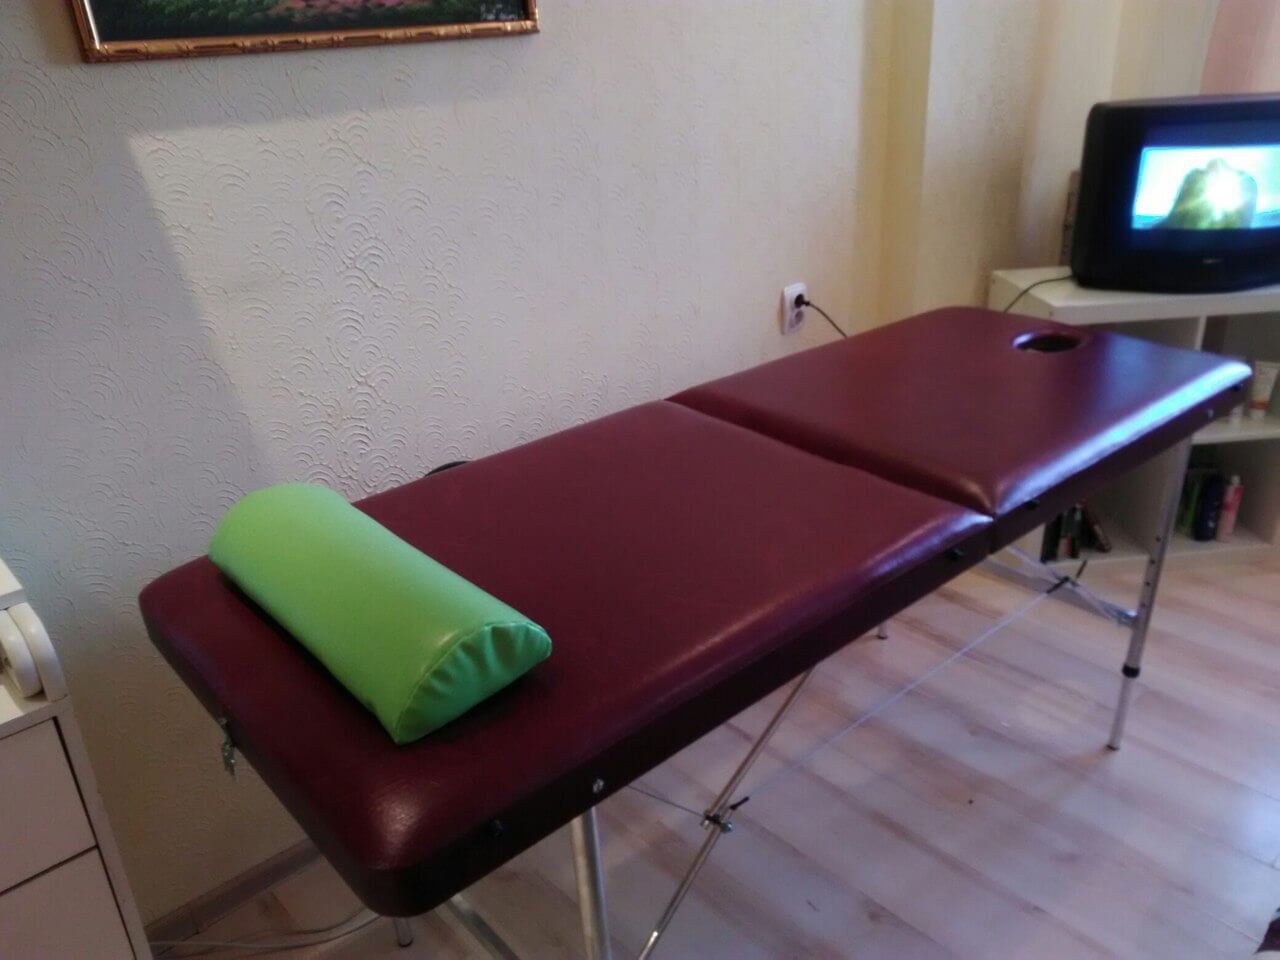 профессиональный стол для массажа